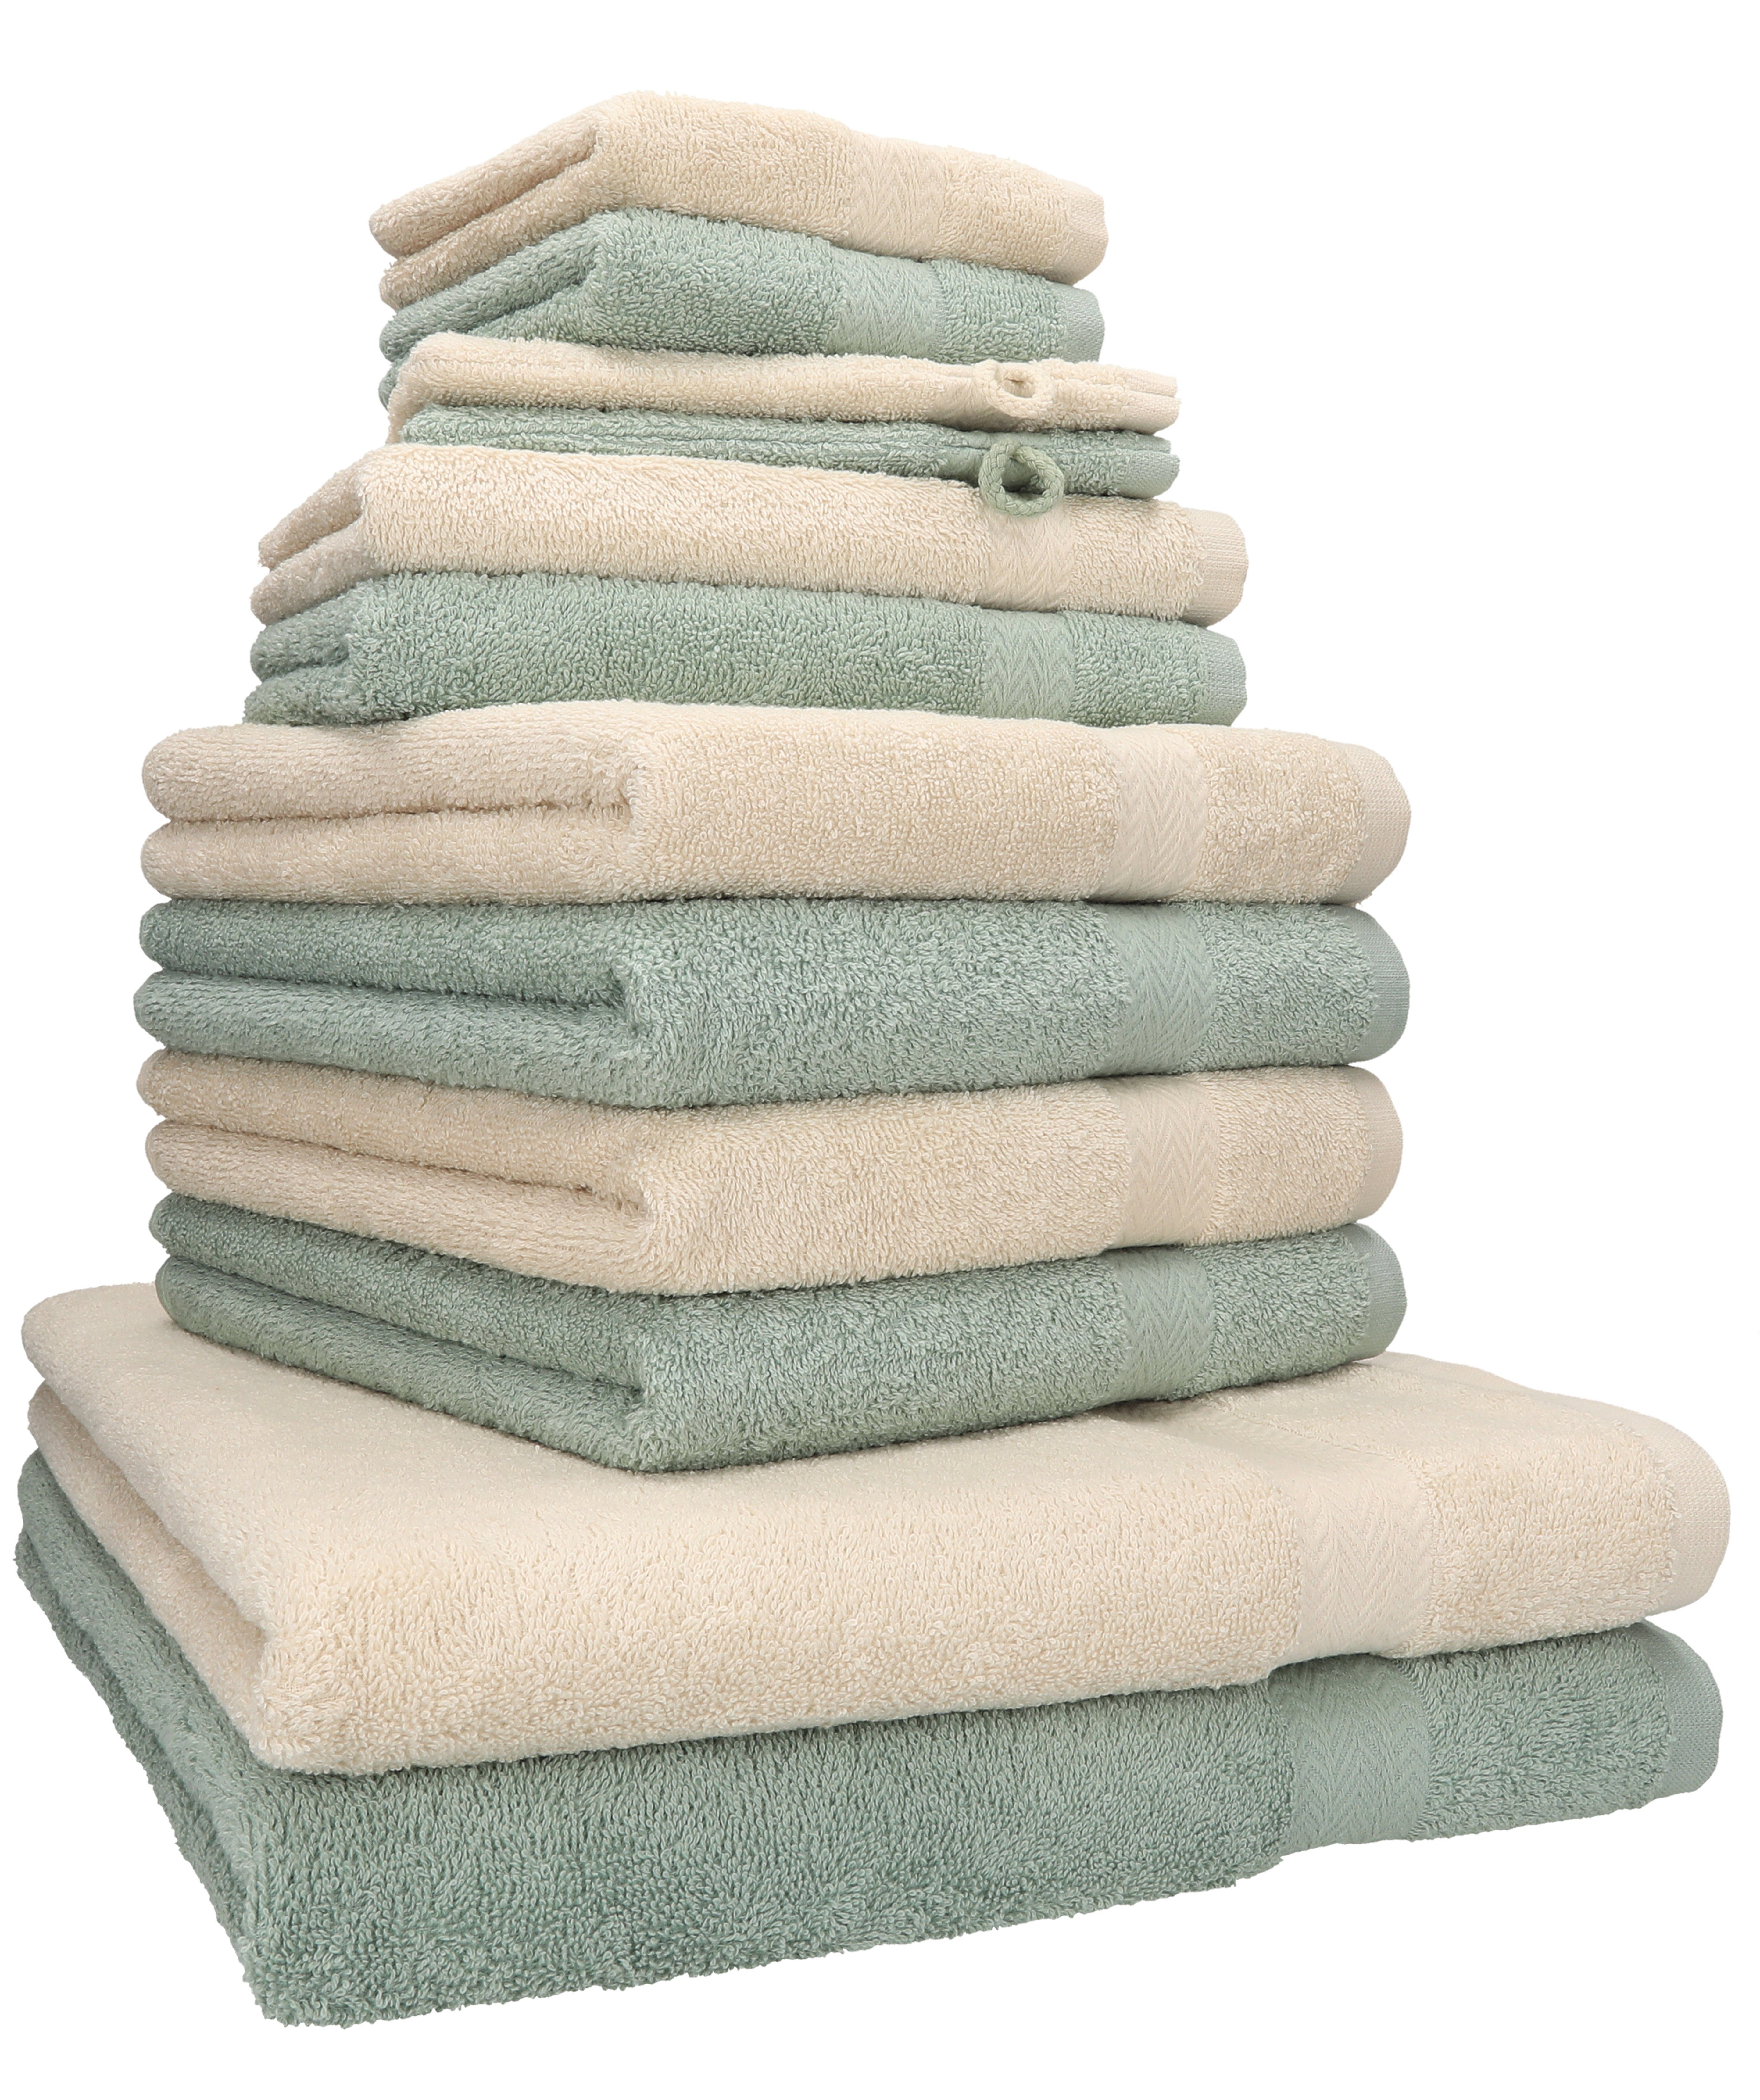 Betz 100% Farbe 12-tlg. Handtuch Handtuch Set Baumwolle, Sand/heugrün, (12-tlg) Premium Set